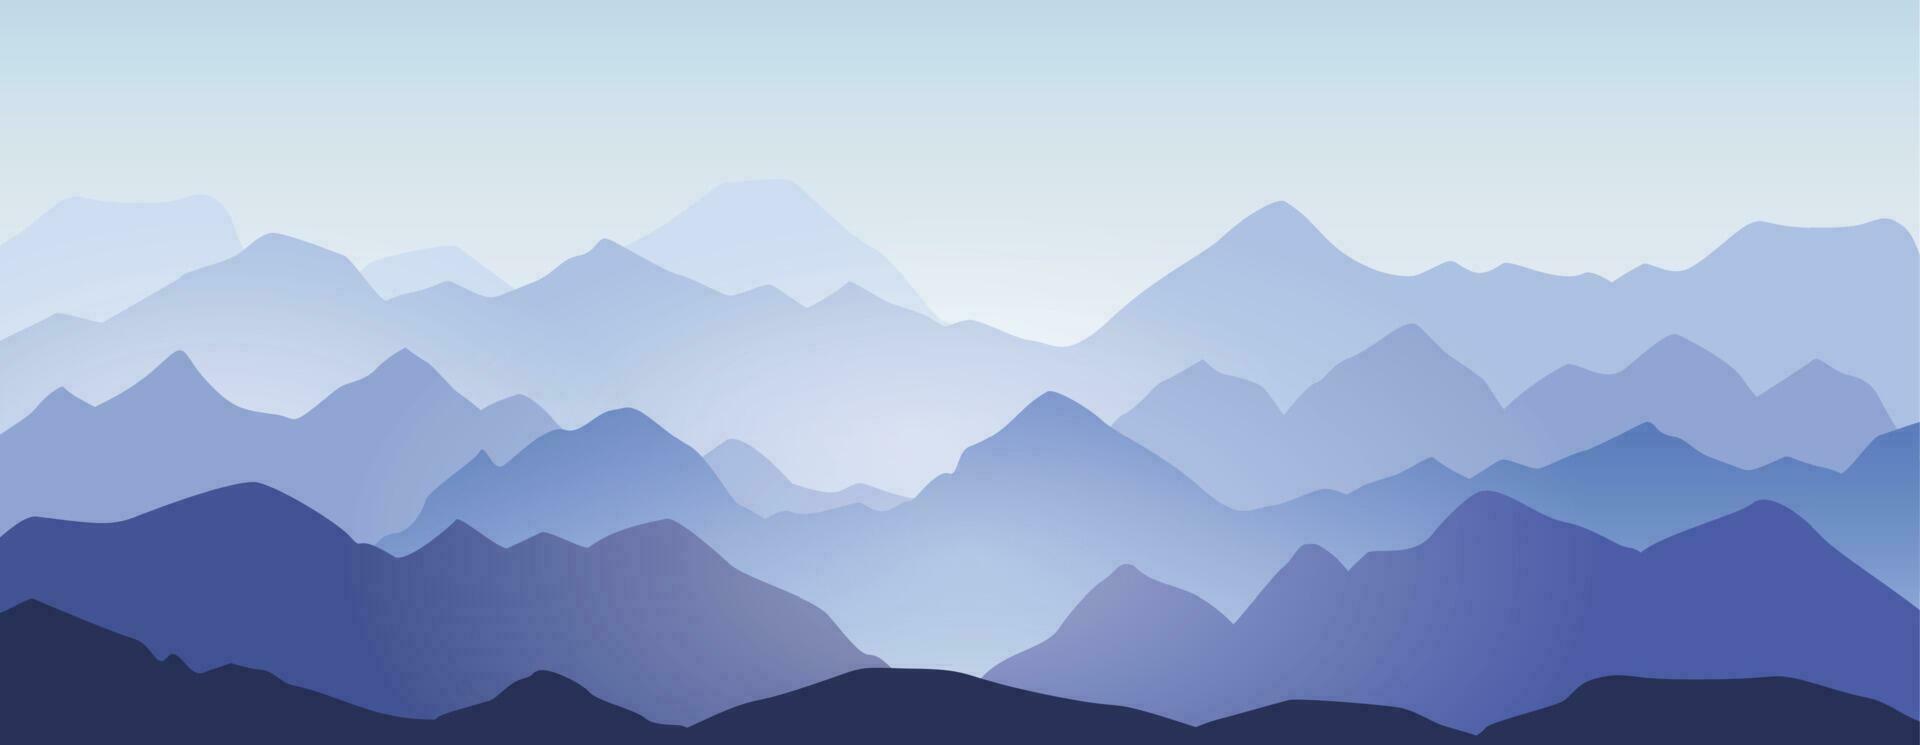 berg åsar och kullar silhuett landskap bakgrund. abstrakt morgon- bergen panorama, skön natur scen vektor illustration